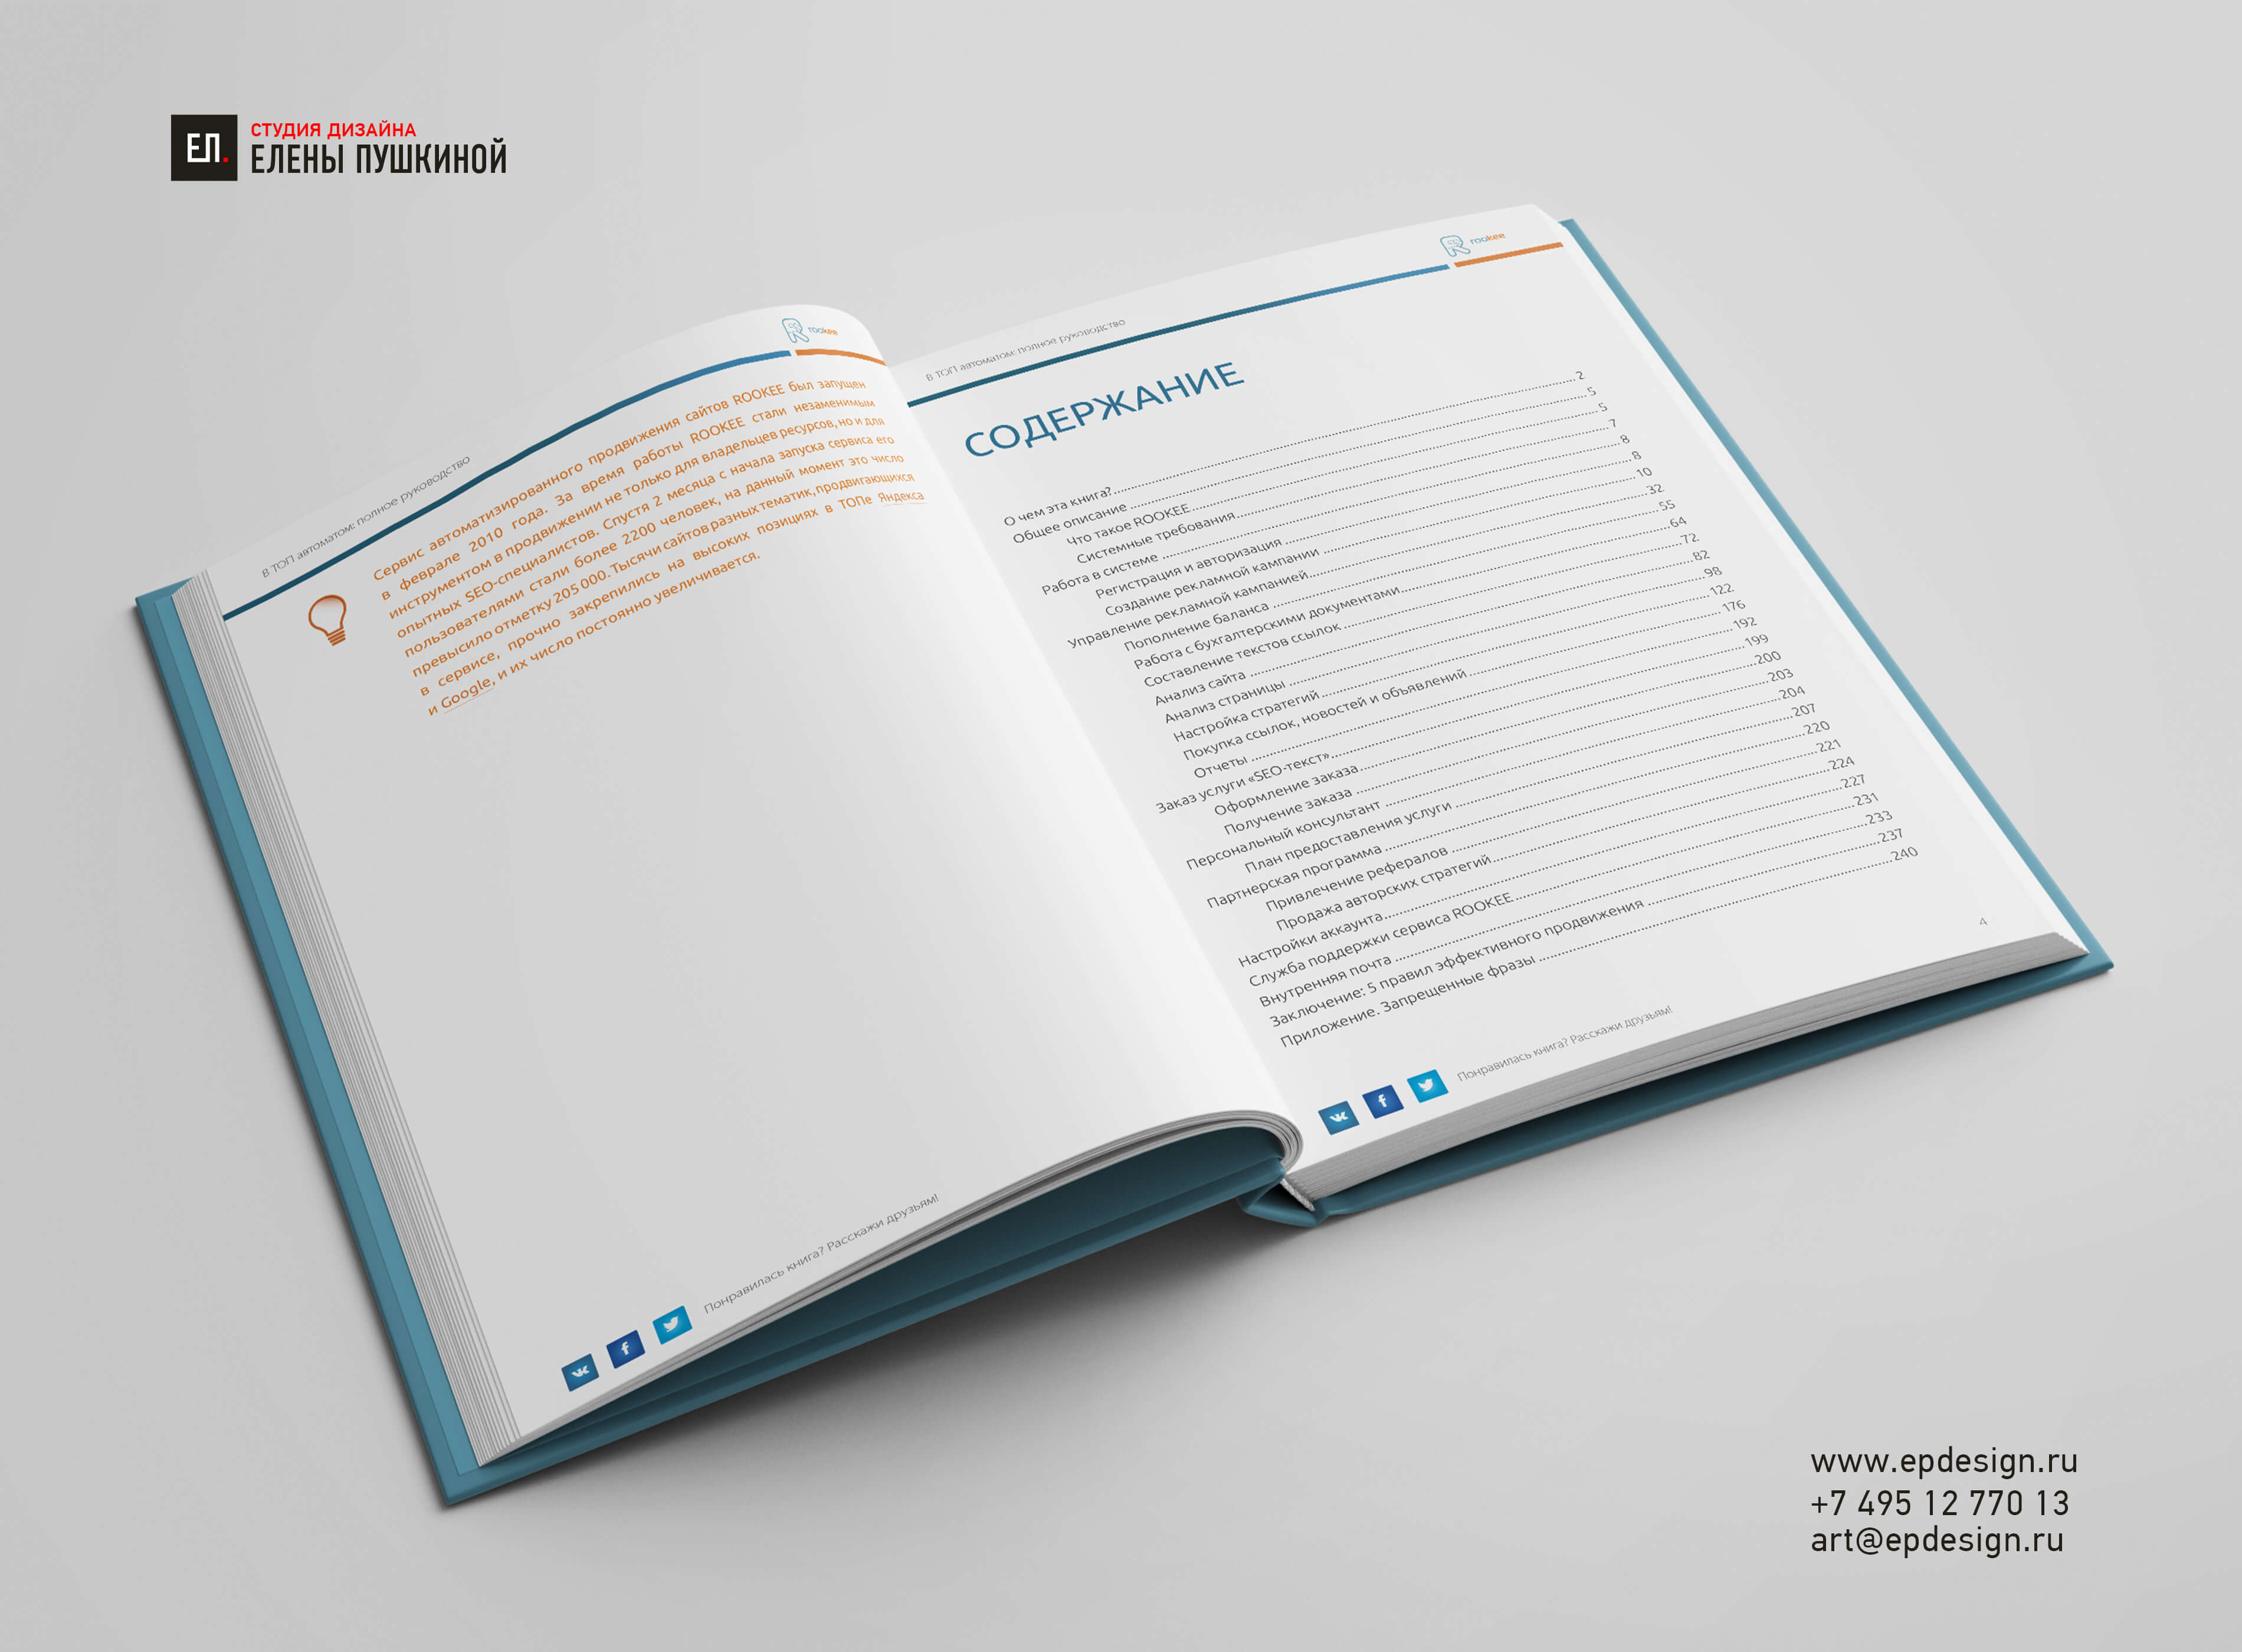 Создание обложки книги «В топ автоматом: полное руководство» Создание книг Портфолио